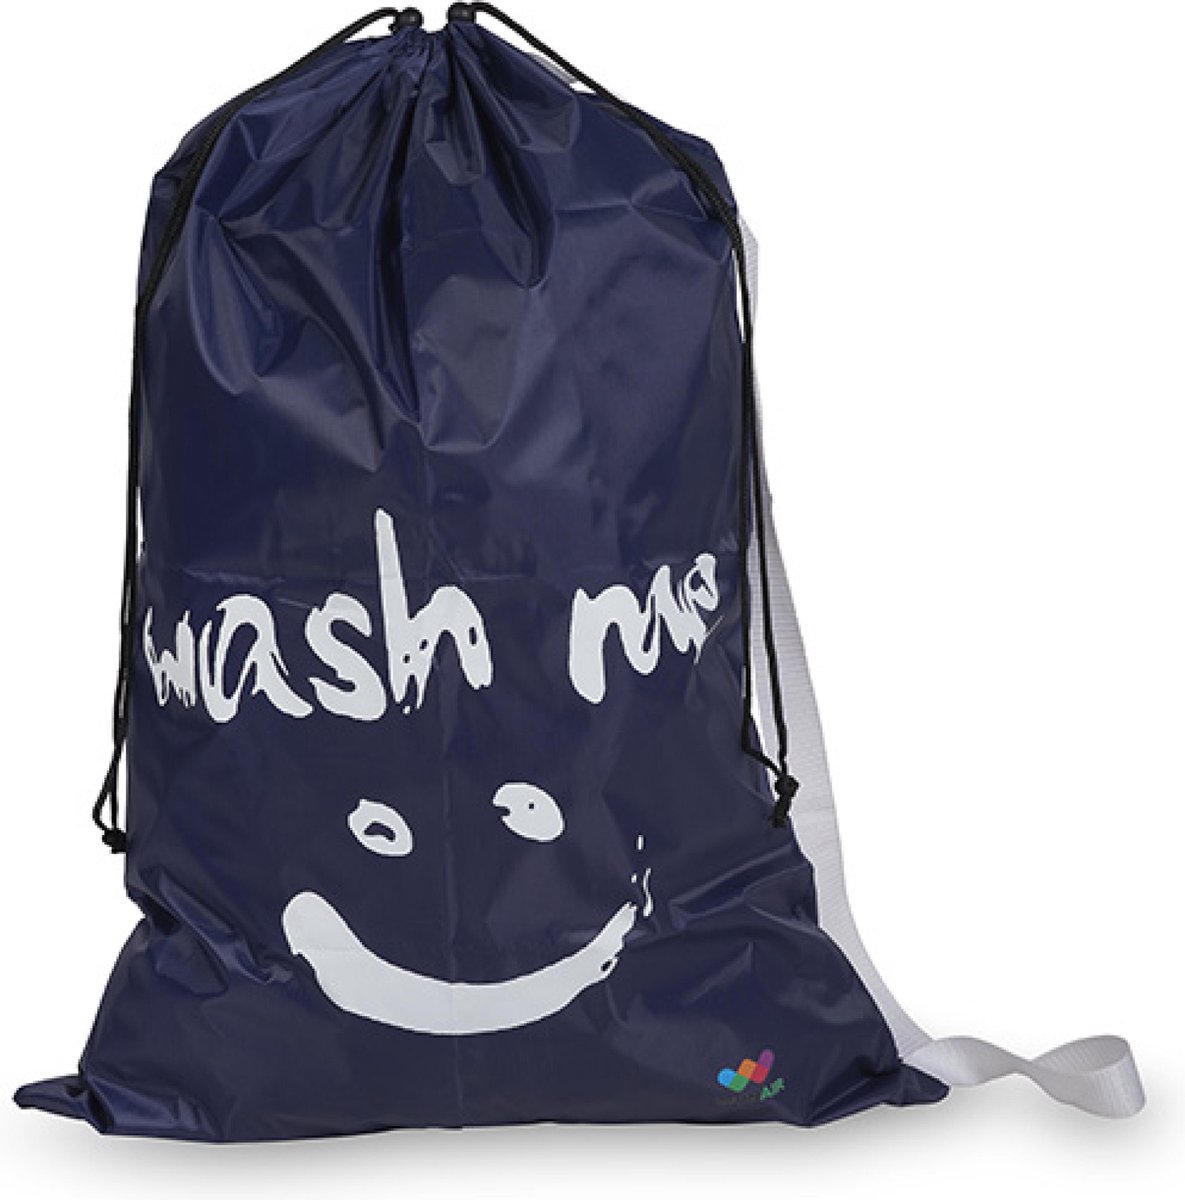 Wonair - Grote waszak - Laundry bag - 60x90cm - Donkerblauw - Met trekkoord en draagband